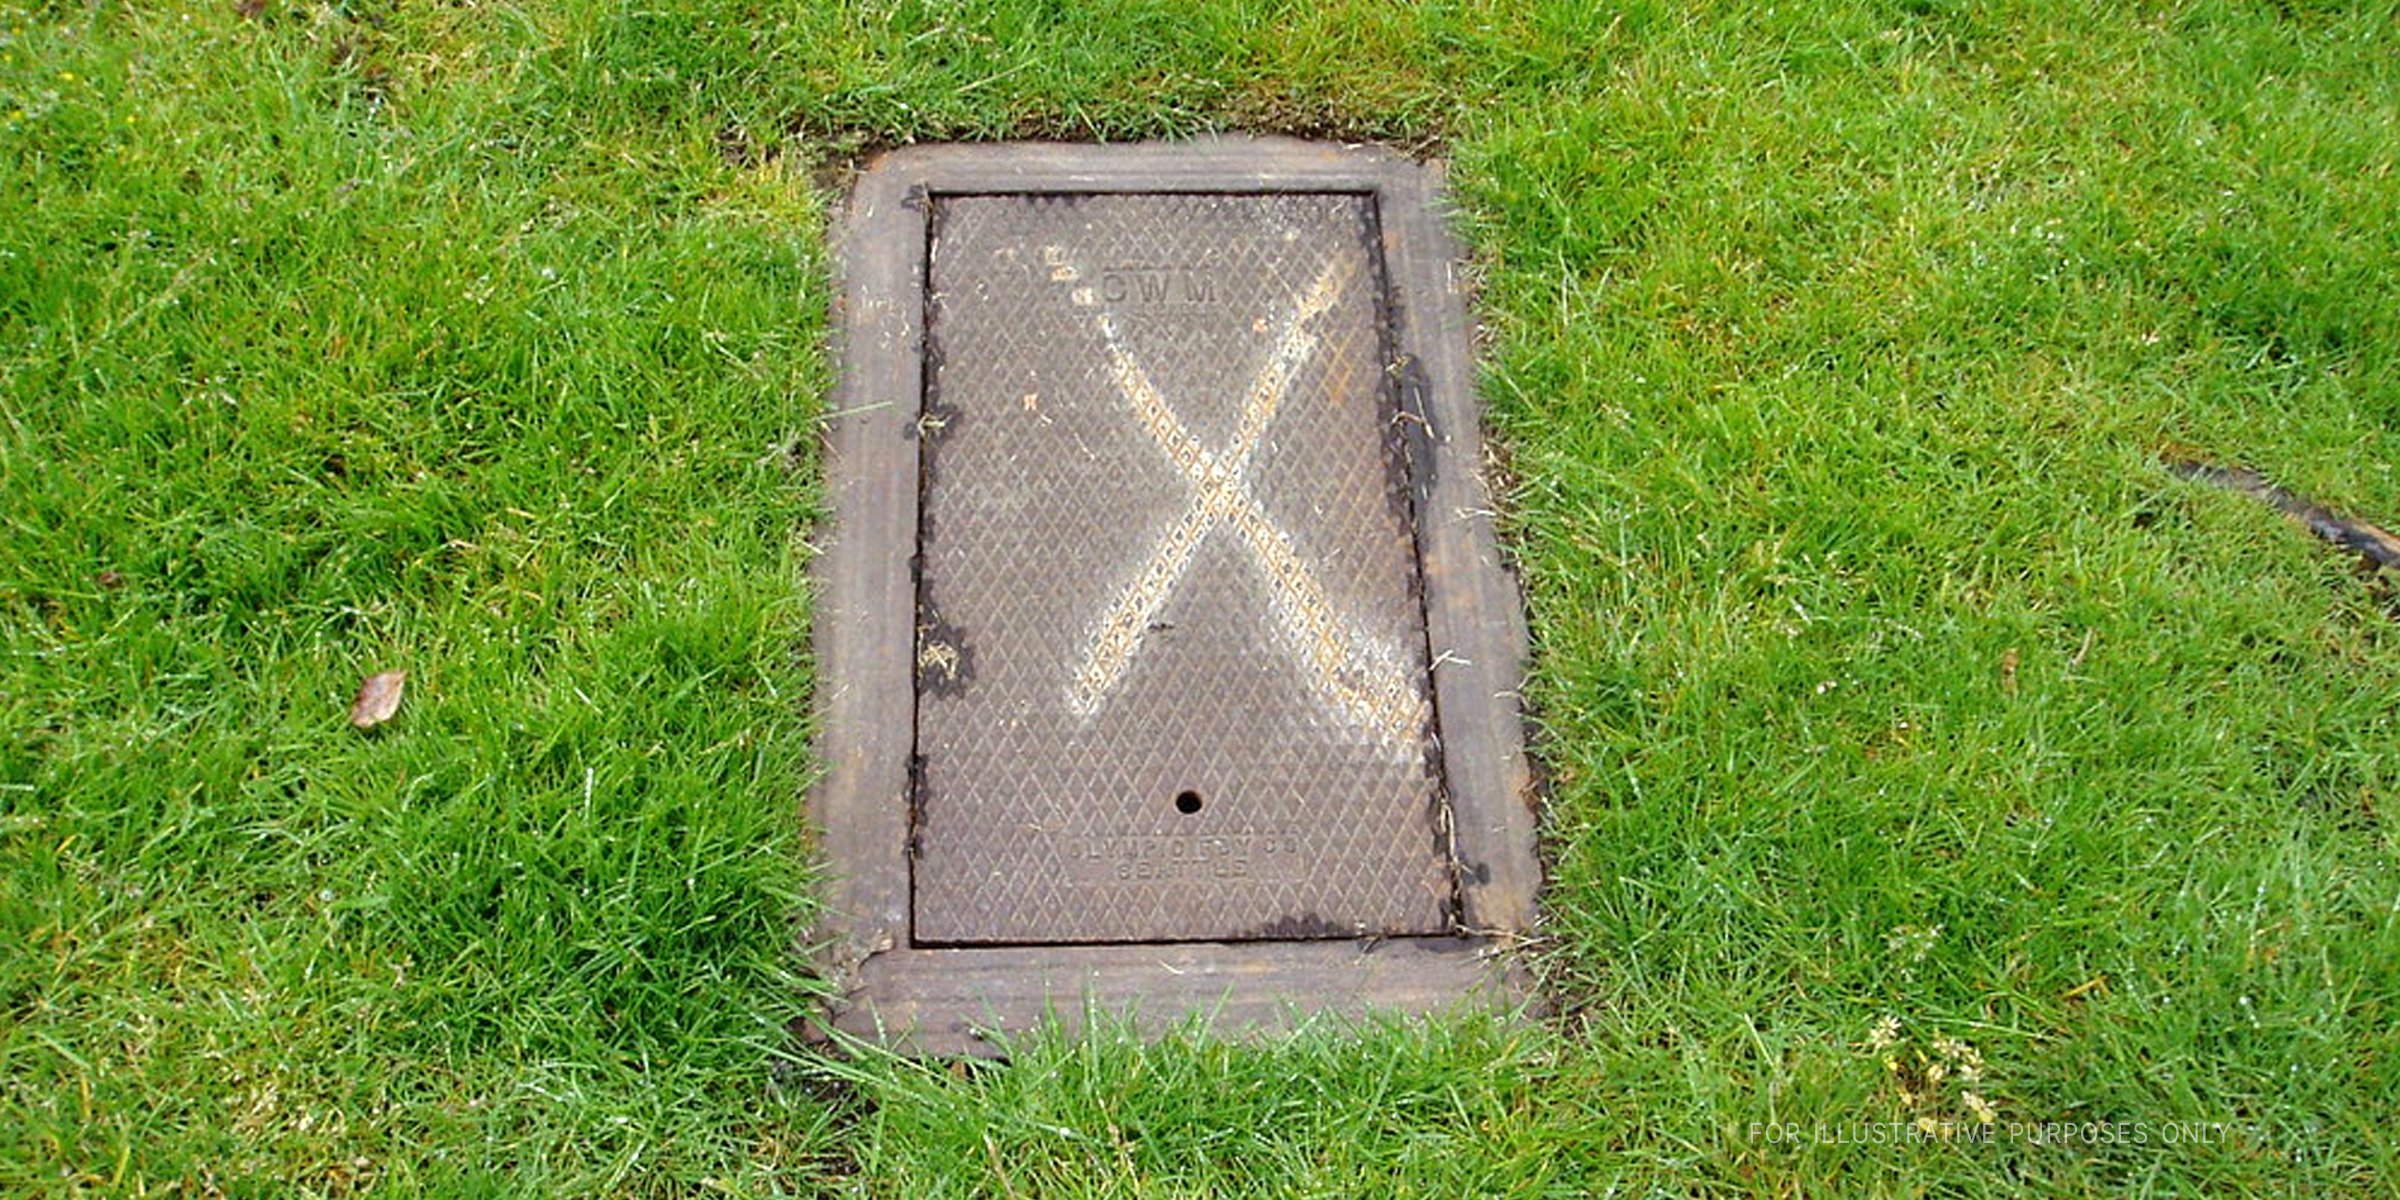 Versteckter Bunker, markiert mit einem "X" | Quelle: Flickr/seamark (CC BY-SA 2.0)